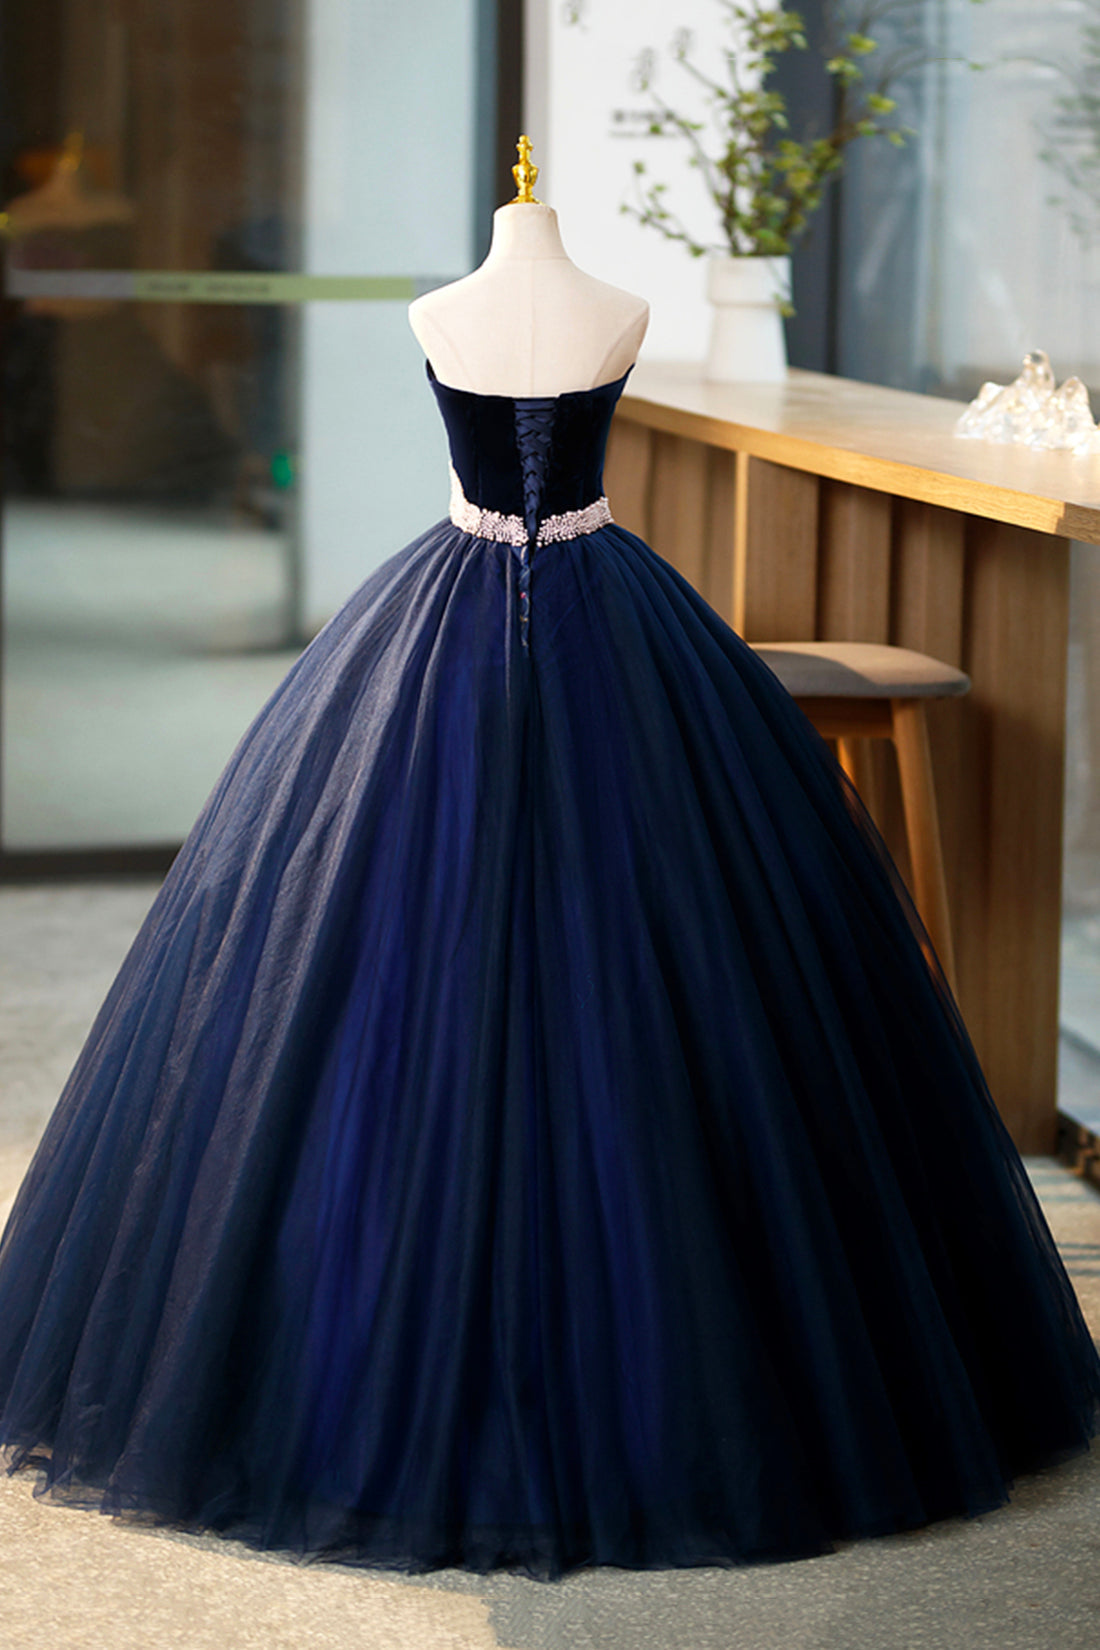 Party Dress Black, Blue Velvet Tulle Long Prom Dresses, Blue Evening Party Dresses